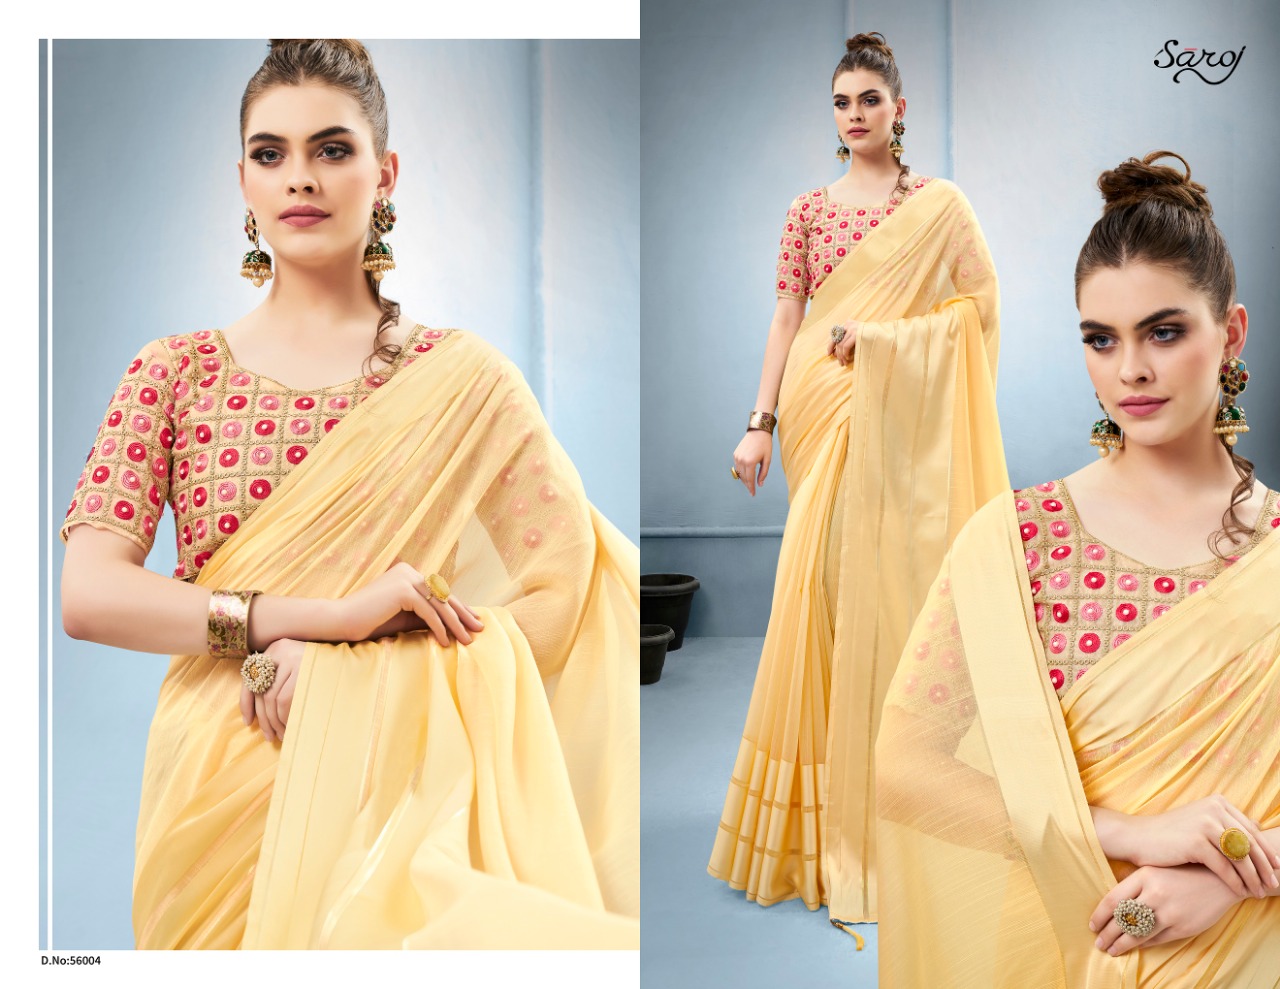 Saroj Saree Premium Silk 56004